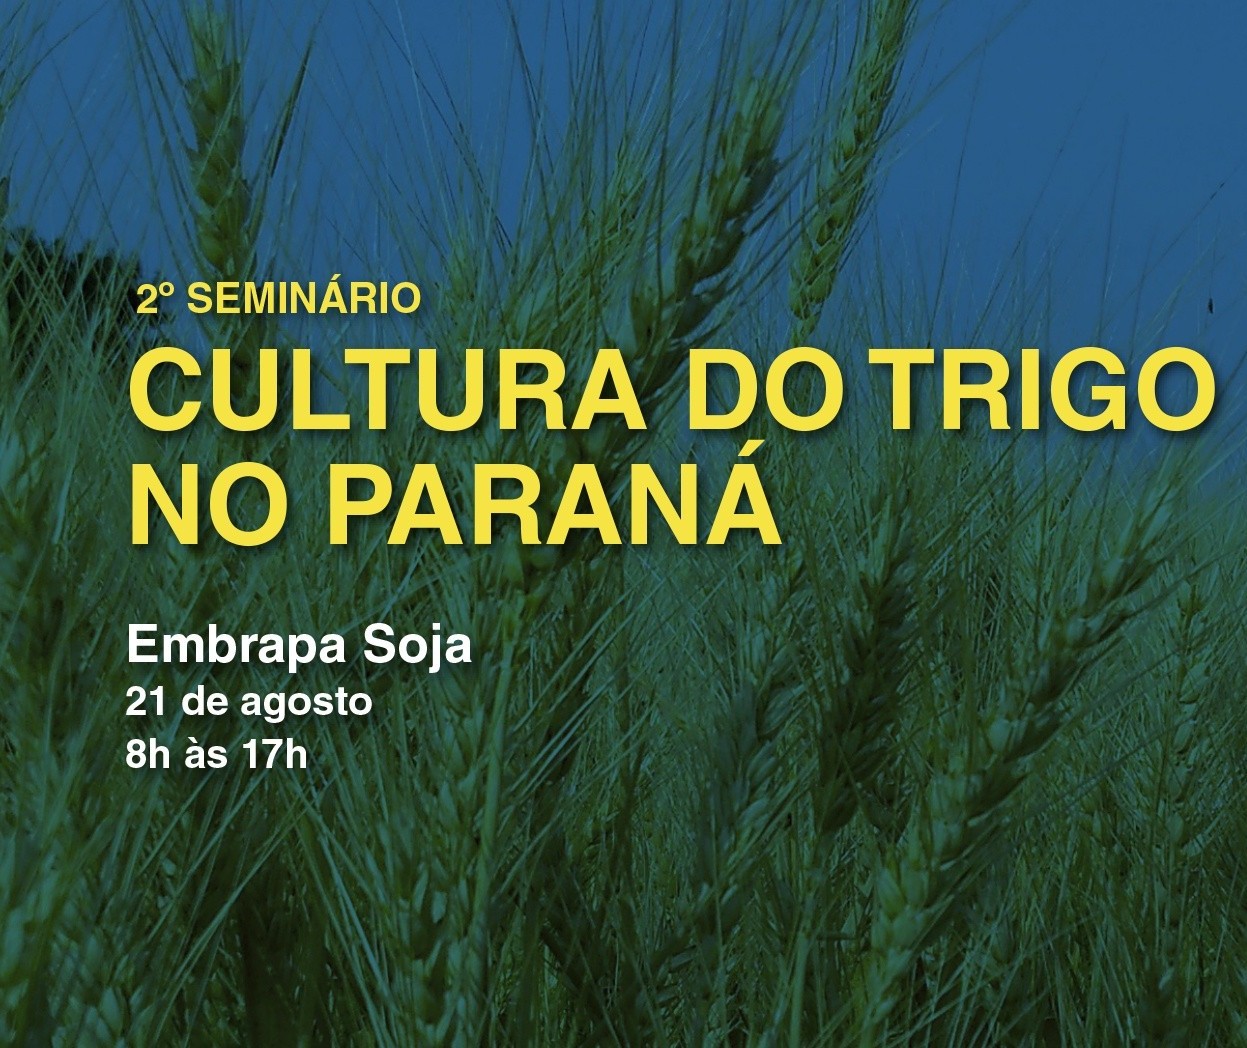 2º Seminário da Cultura do Trigo no Paraná será dia 21 de agosto, em Londrina